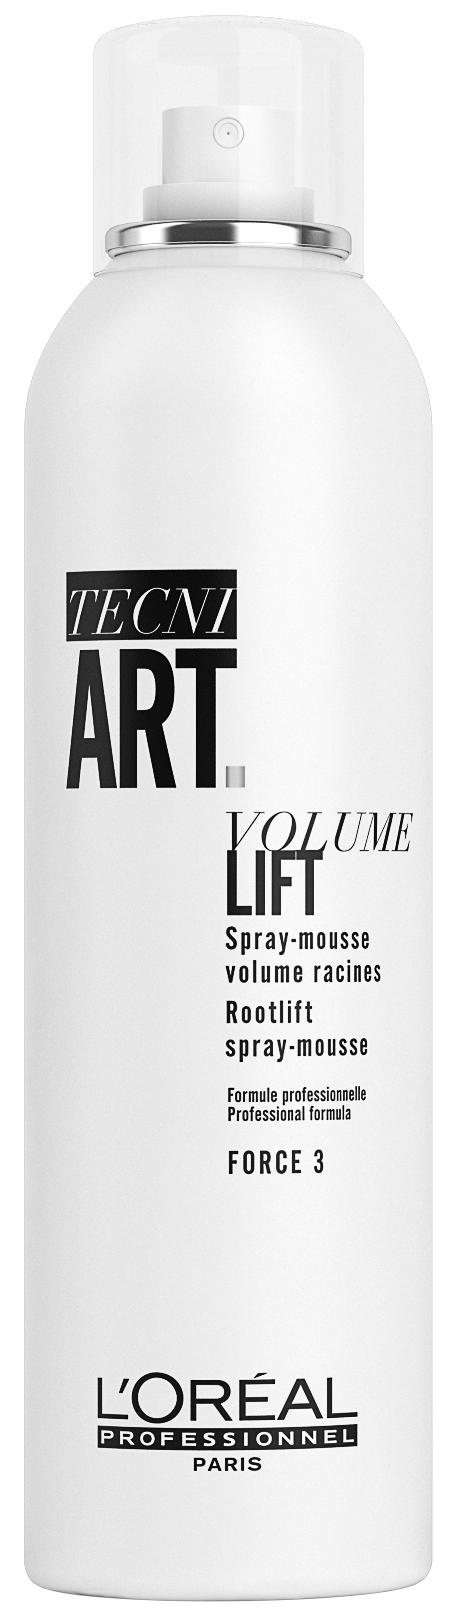 Tecni art Air Volume Lift Mousse, 250ml